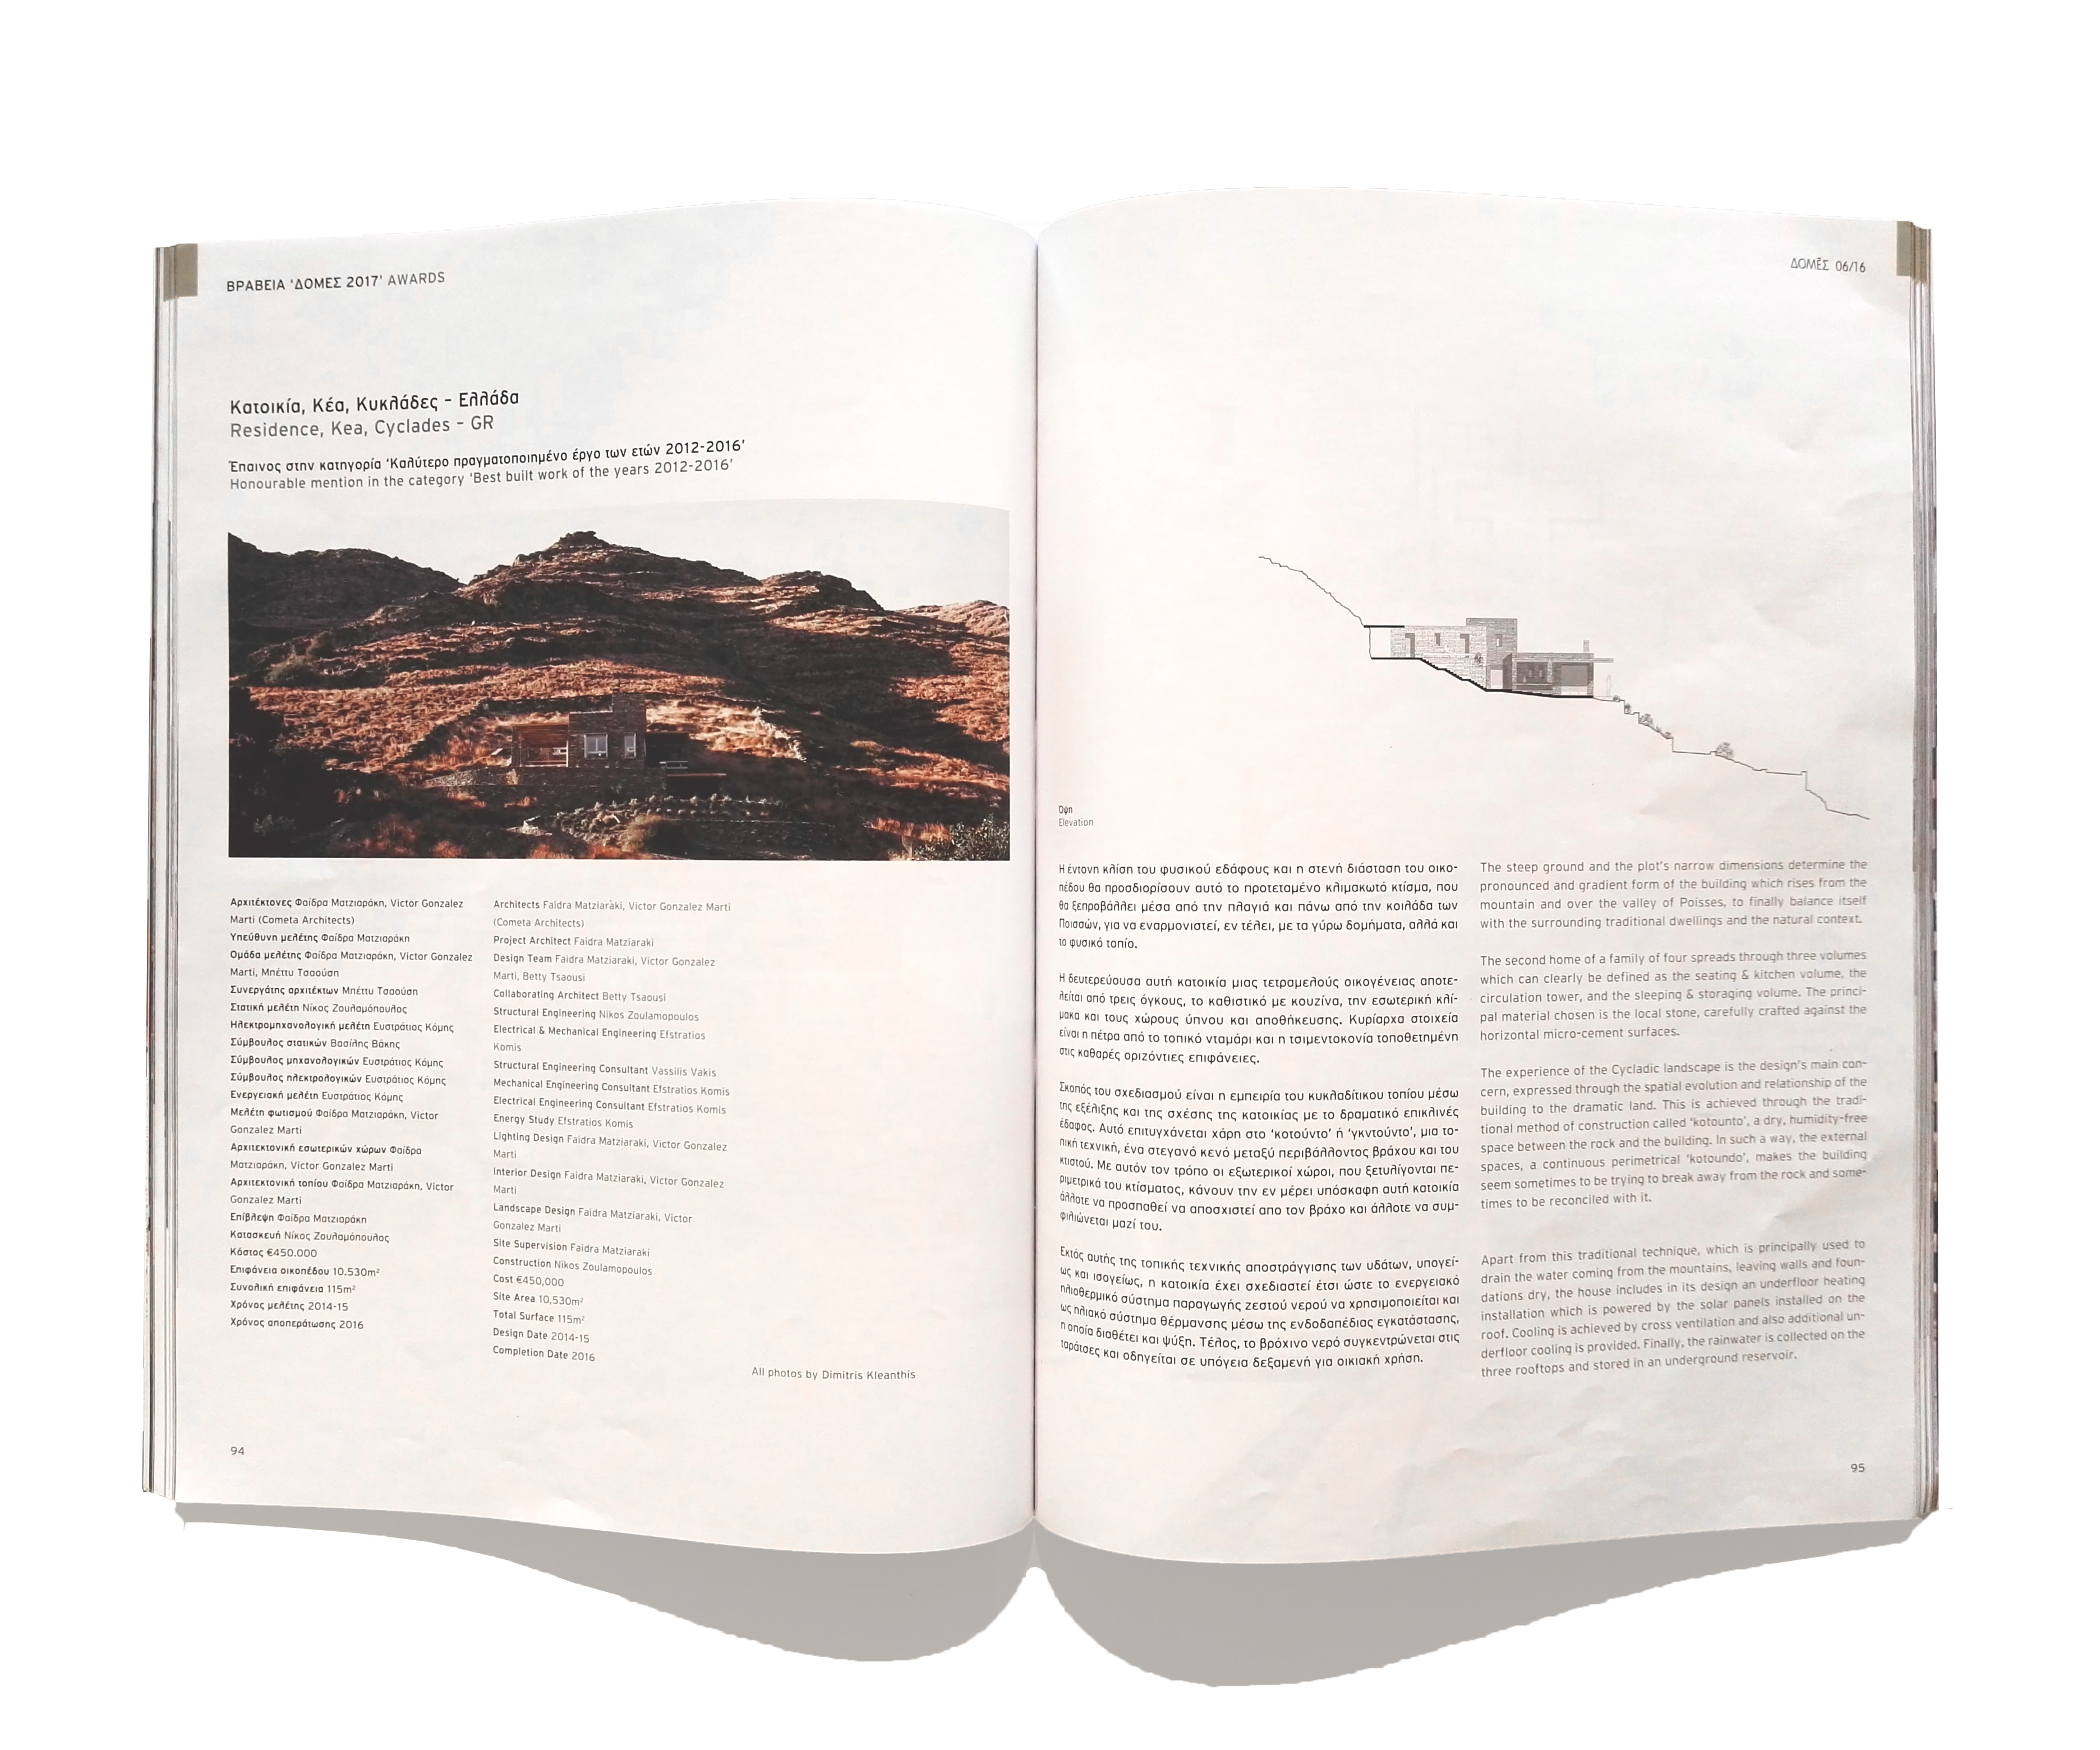 Rocksplit House publication in Domes Magazine, Greece. Cometa Architects - Architecture and Interior Architecture Victor Gonzalez Marti - Faidra Matziaraki